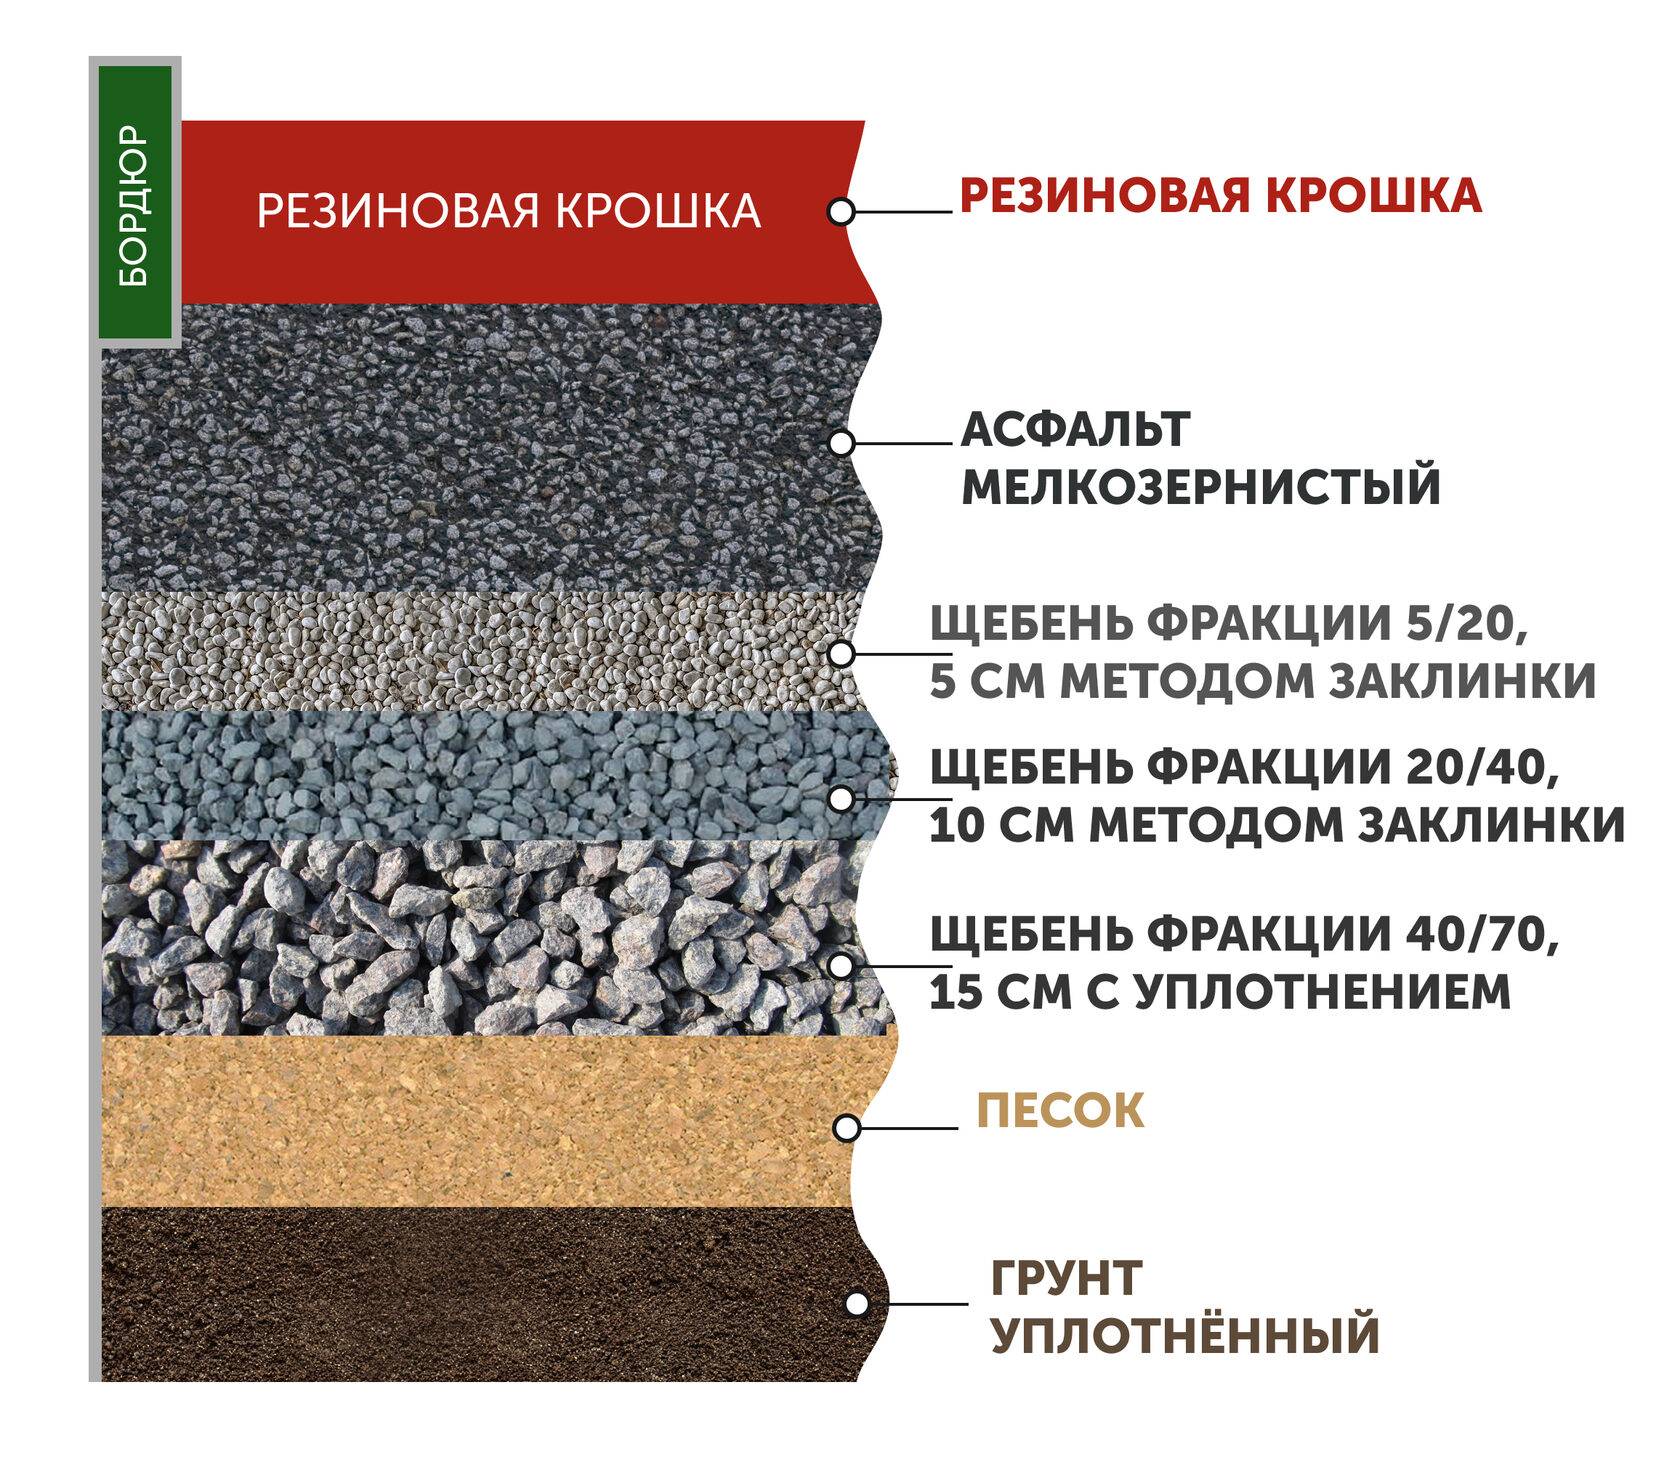 Резиновая тротуарная плитка-укладка,производство и применение